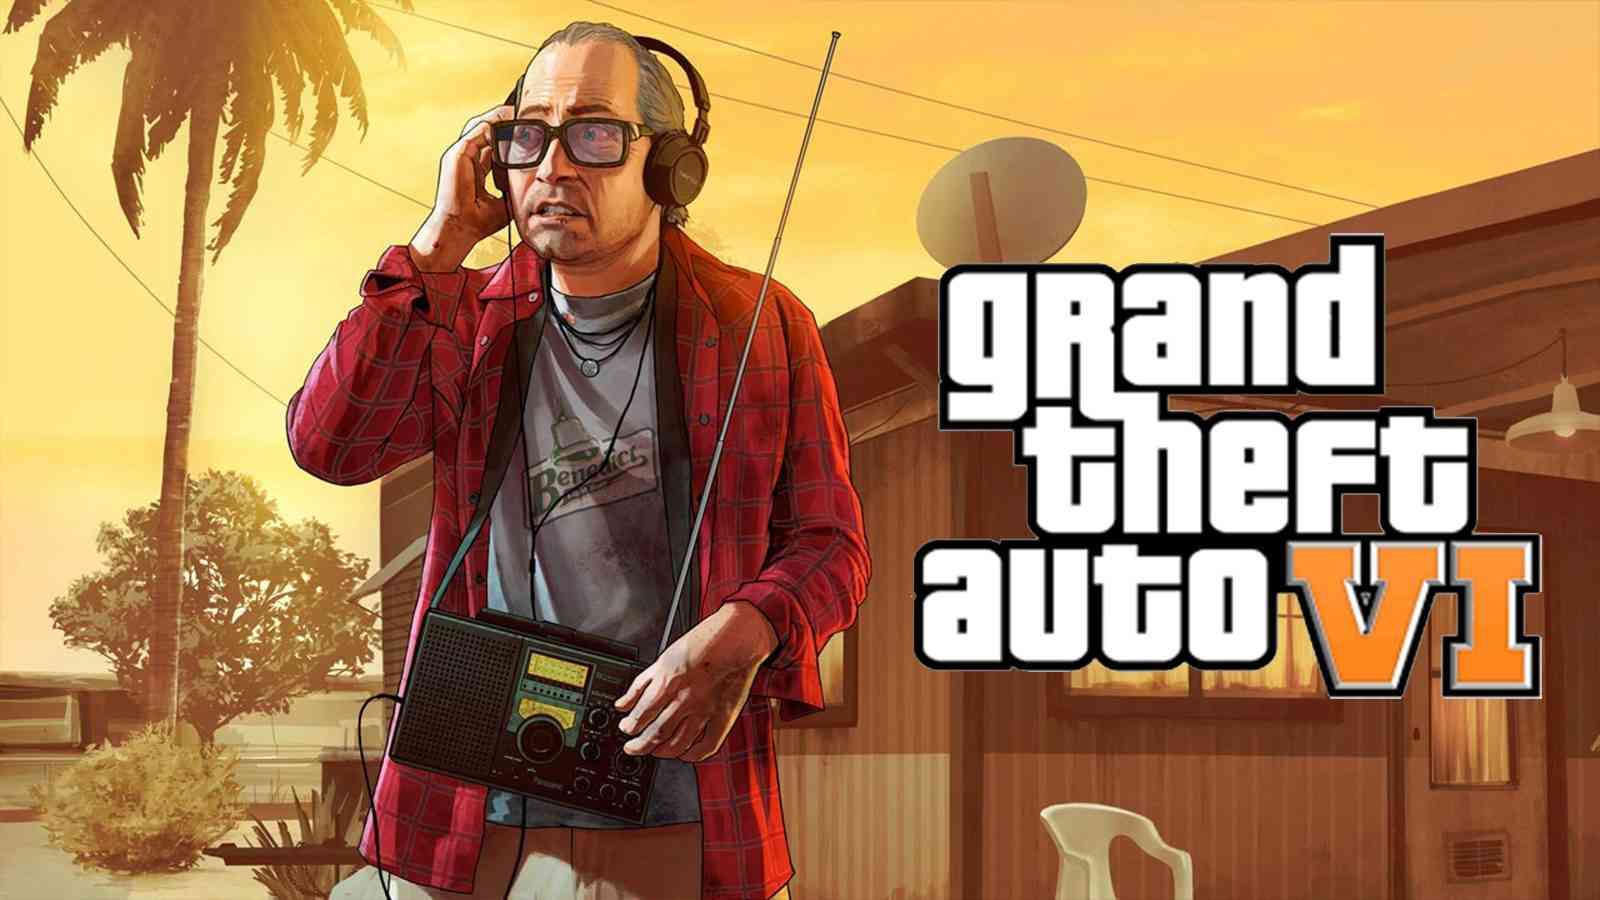 Grand Theft Auto VI | Vazador revela possível trilha sonora do próximo GTA 6 2023 Viciados